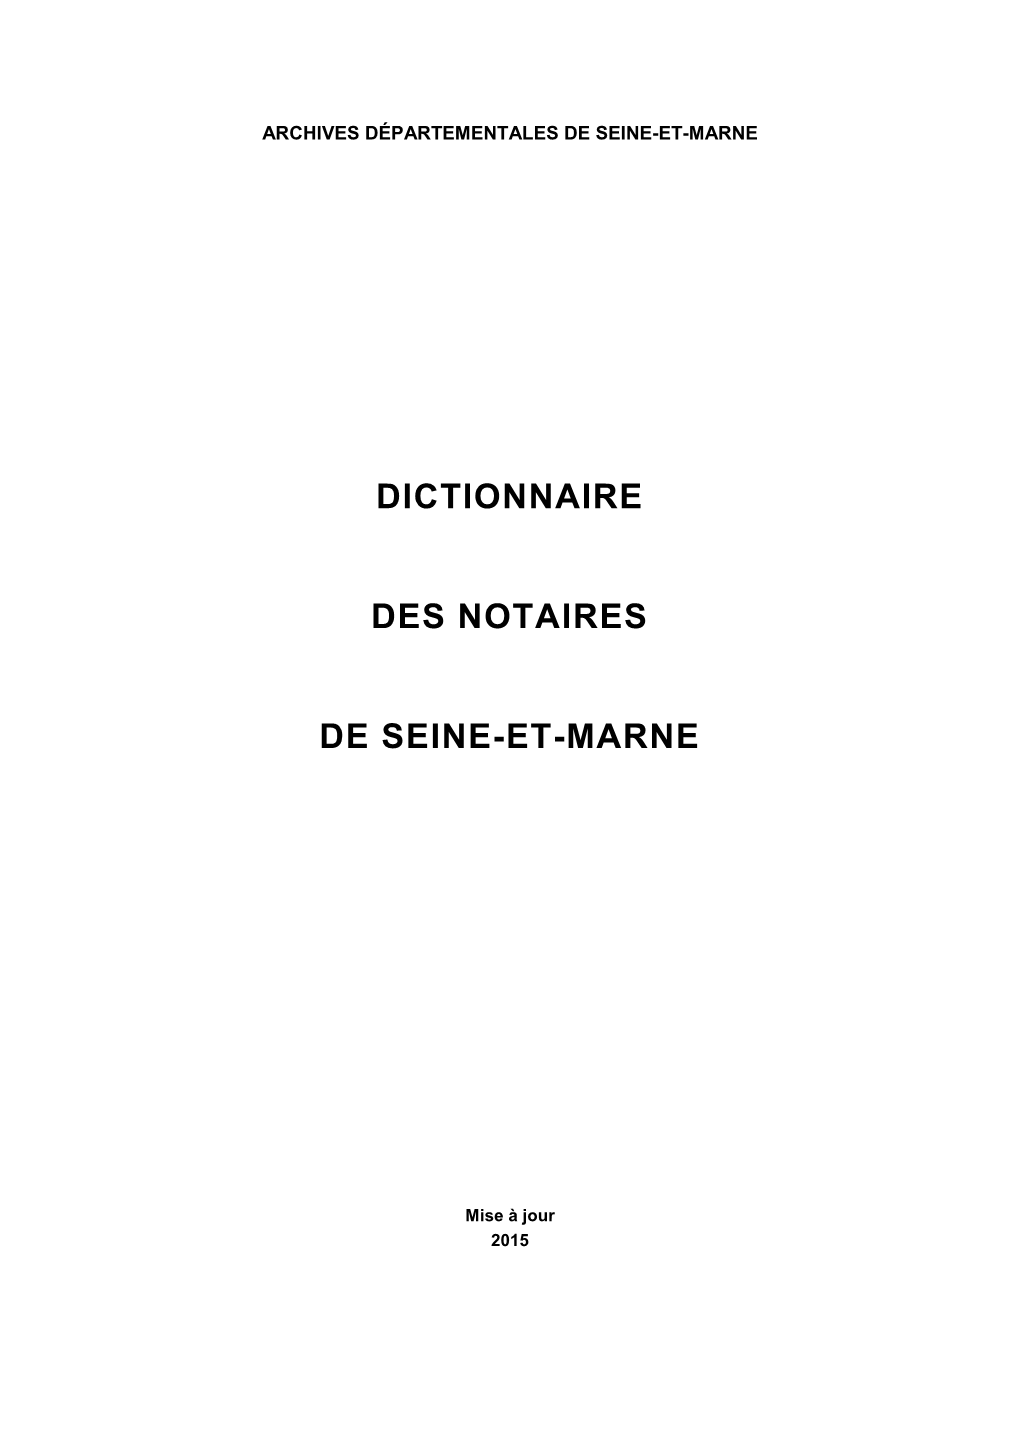 1-Dictionnaire Alphabétique Des Notaires